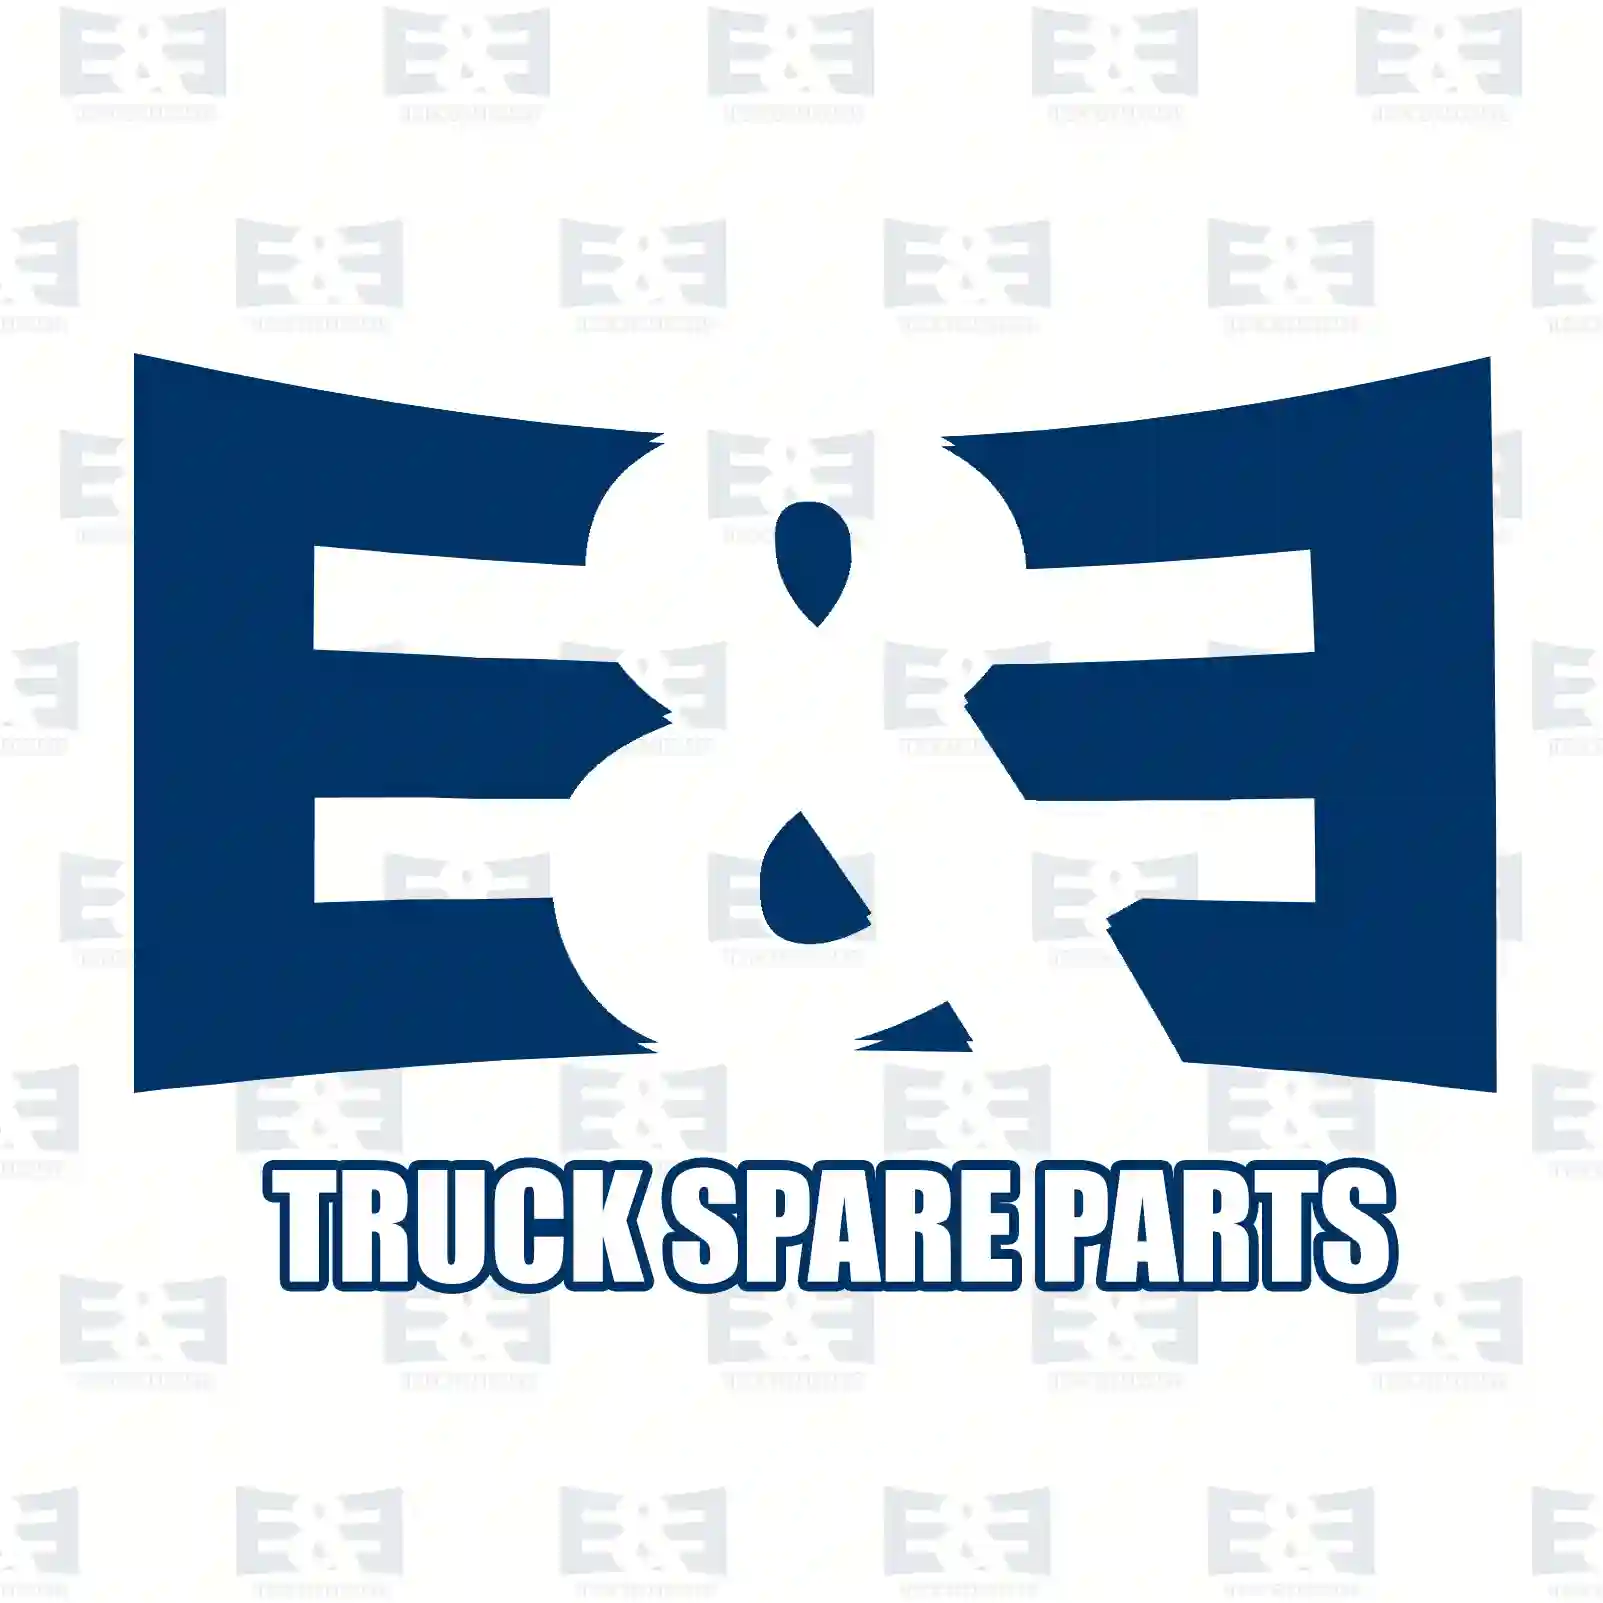 Servo pump, left turn, 2E2205897, 81471016223, 8147 ||  2E2205897 E&E Truck Spare Parts | Truck Spare Parts, Auotomotive Spare Parts Servo pump, left turn, 2E2205897, 81471016223, 8147 ||  2E2205897 E&E Truck Spare Parts | Truck Spare Parts, Auotomotive Spare Parts